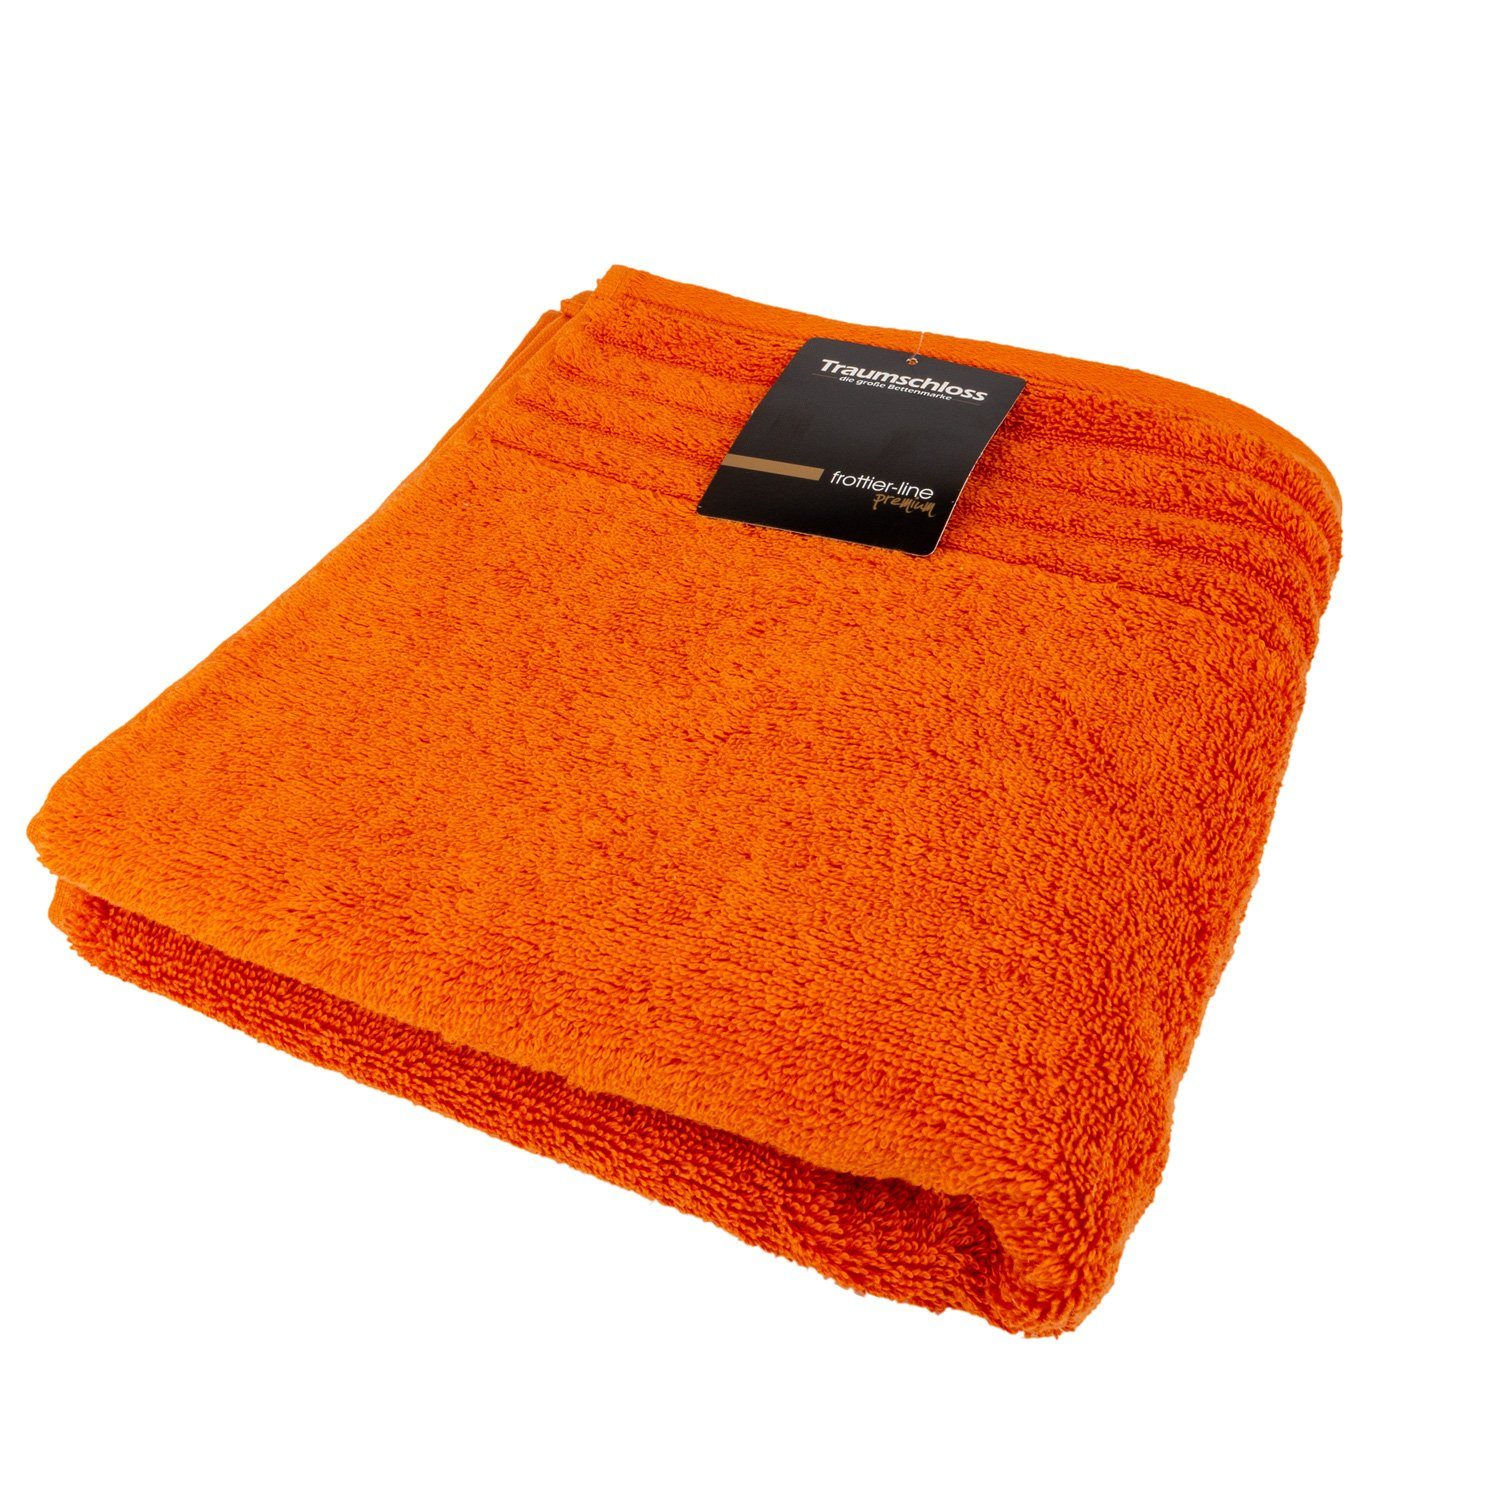 Traumschloss Duschtuch Frottier Supima Baumwolle orange (1-St), mit Premium-Line, amerikanische 600g/m² 100